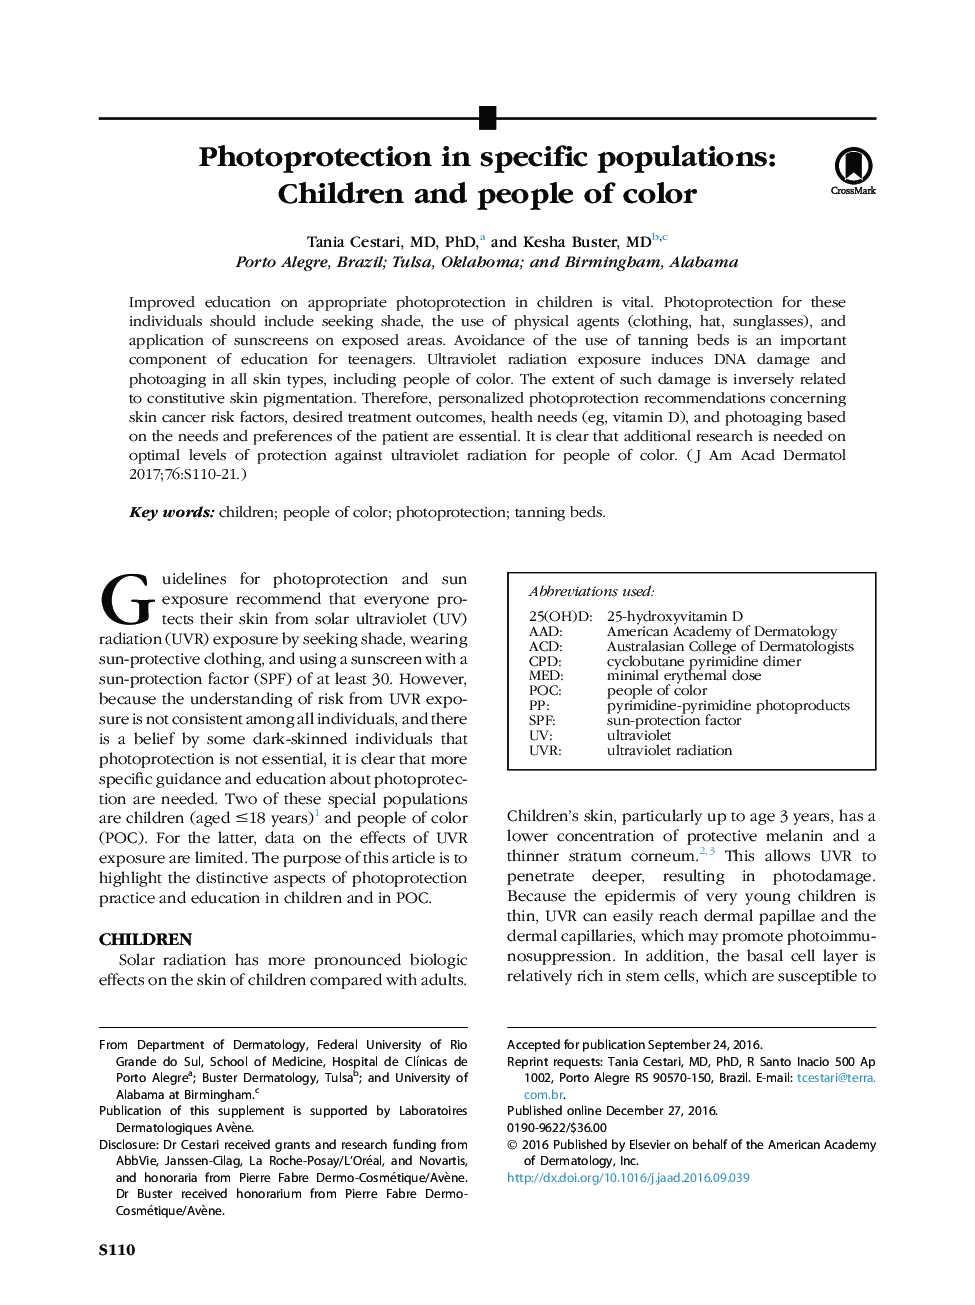 حفاظت از عکس در جمعیت خاص: کودکان و افراد رنگ 